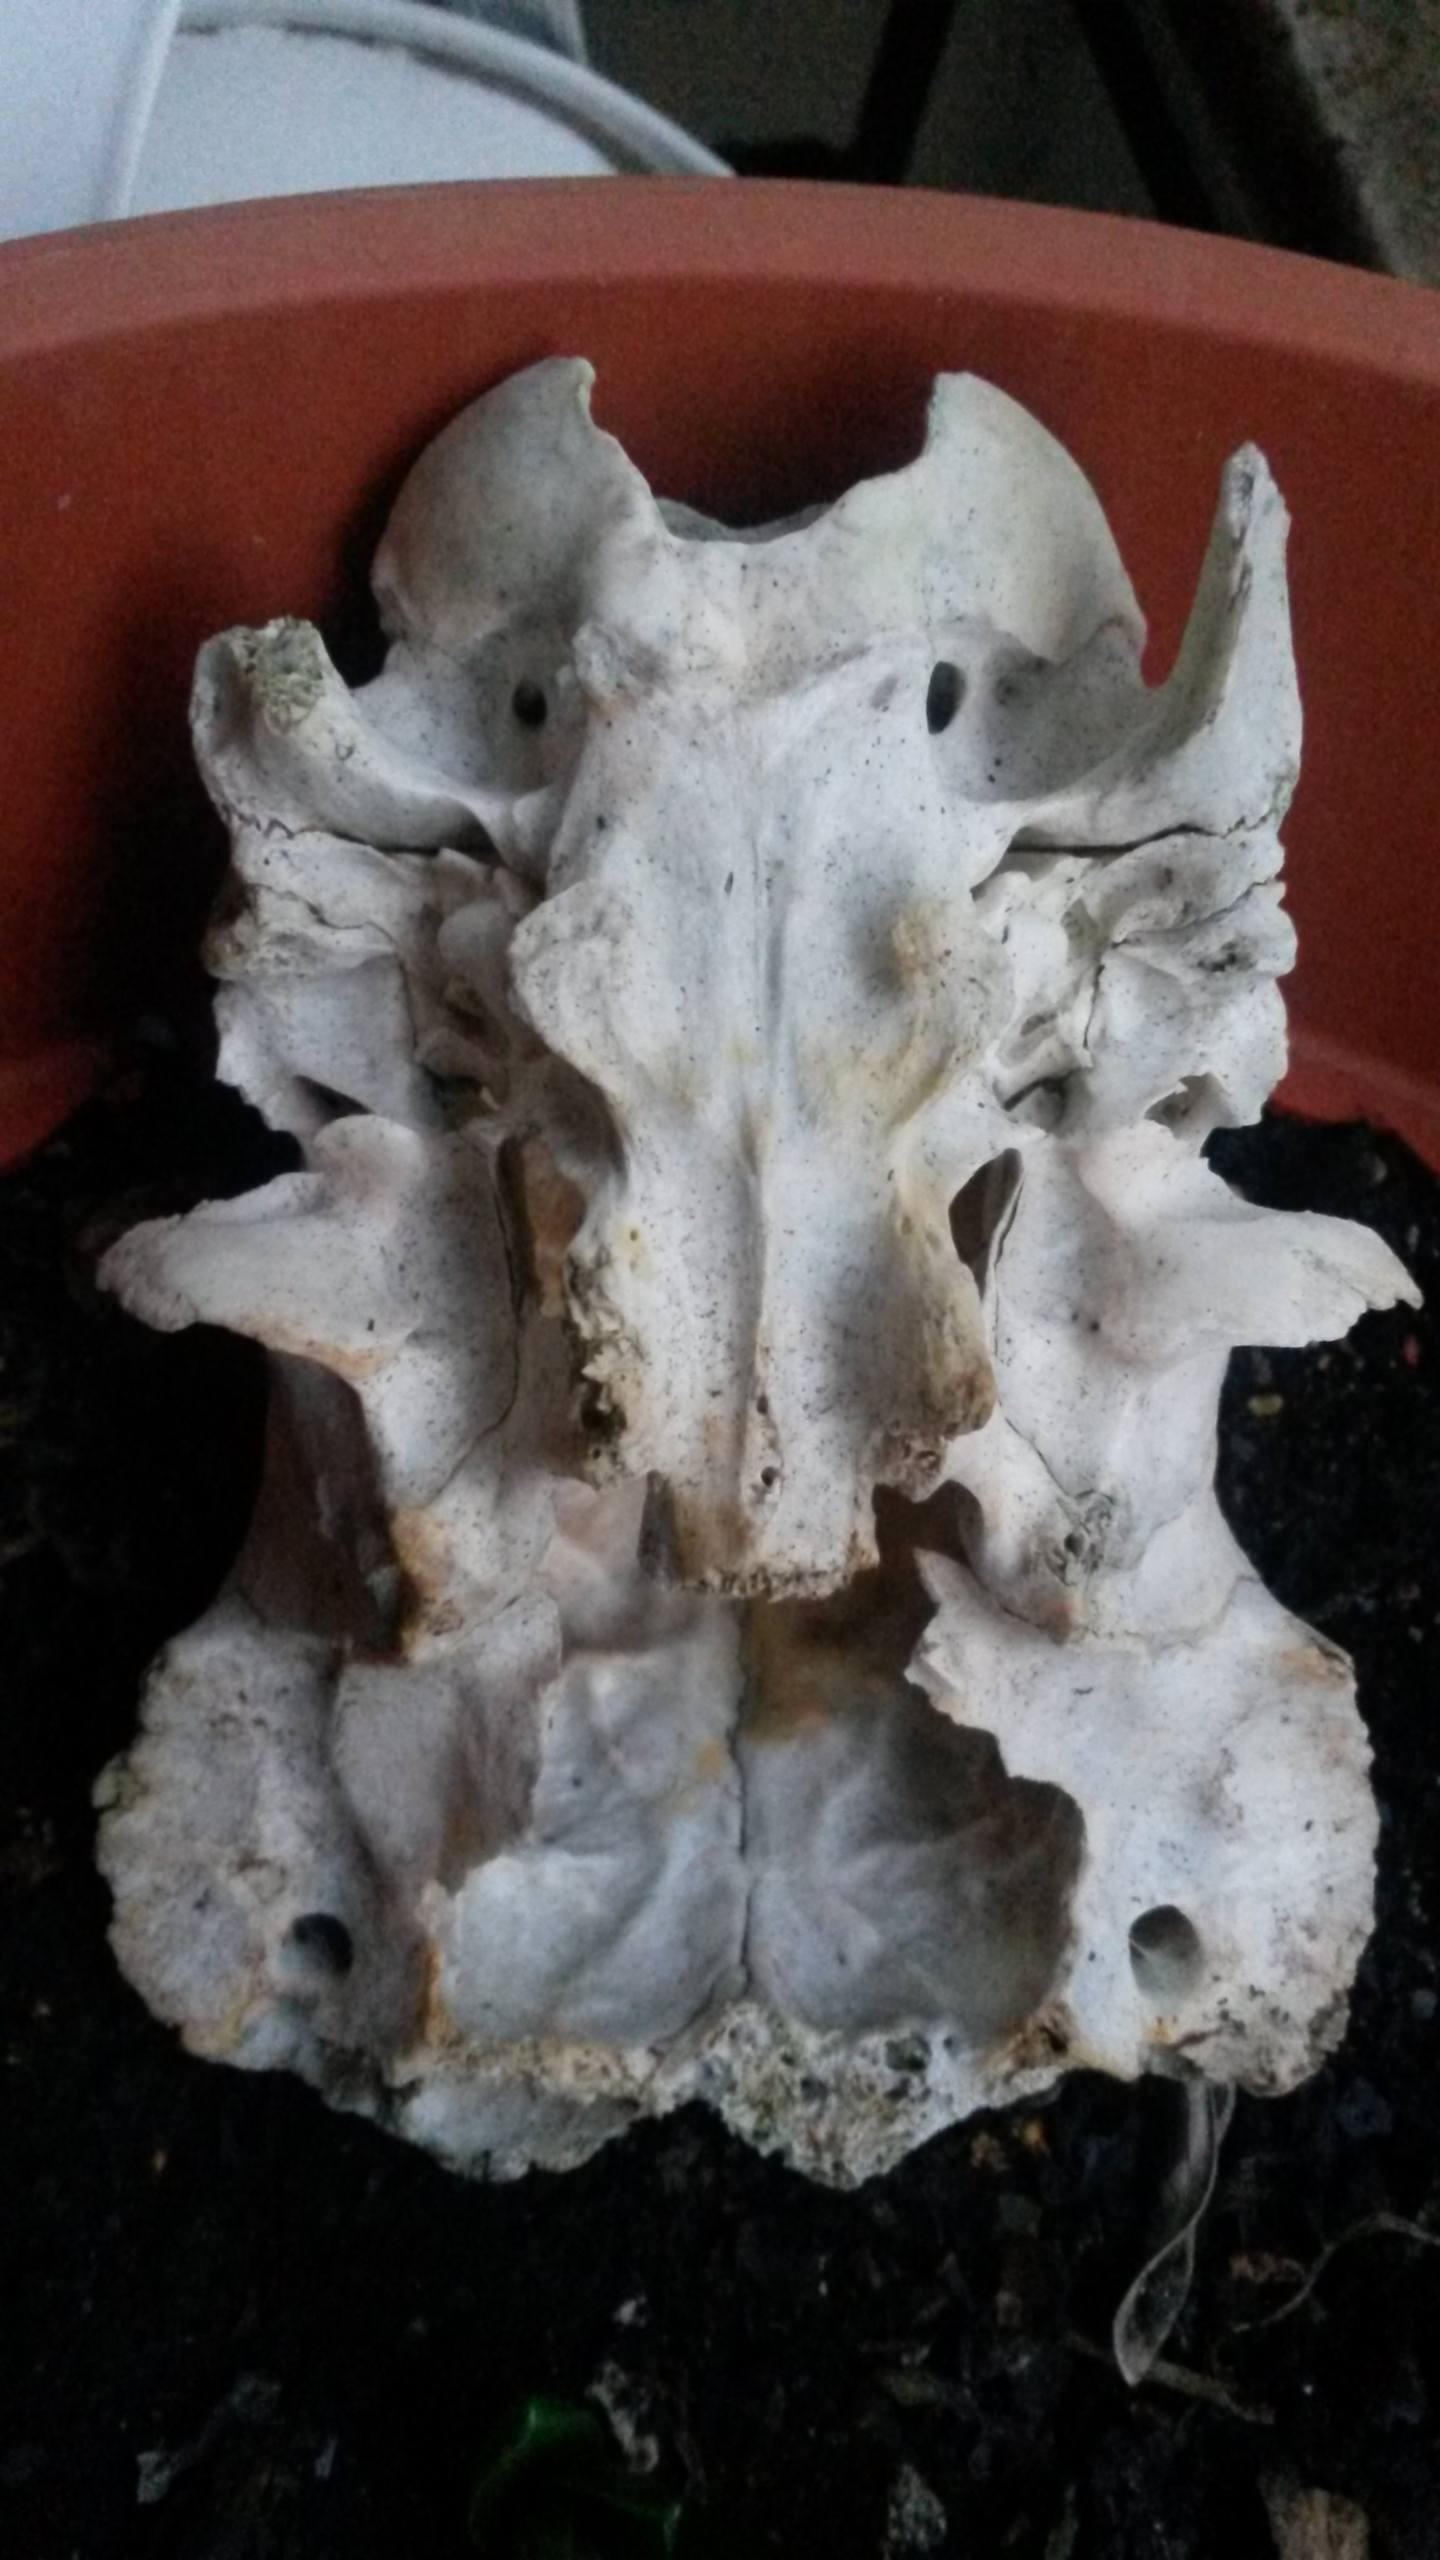 cranio in comune di Fiumicino - Roma